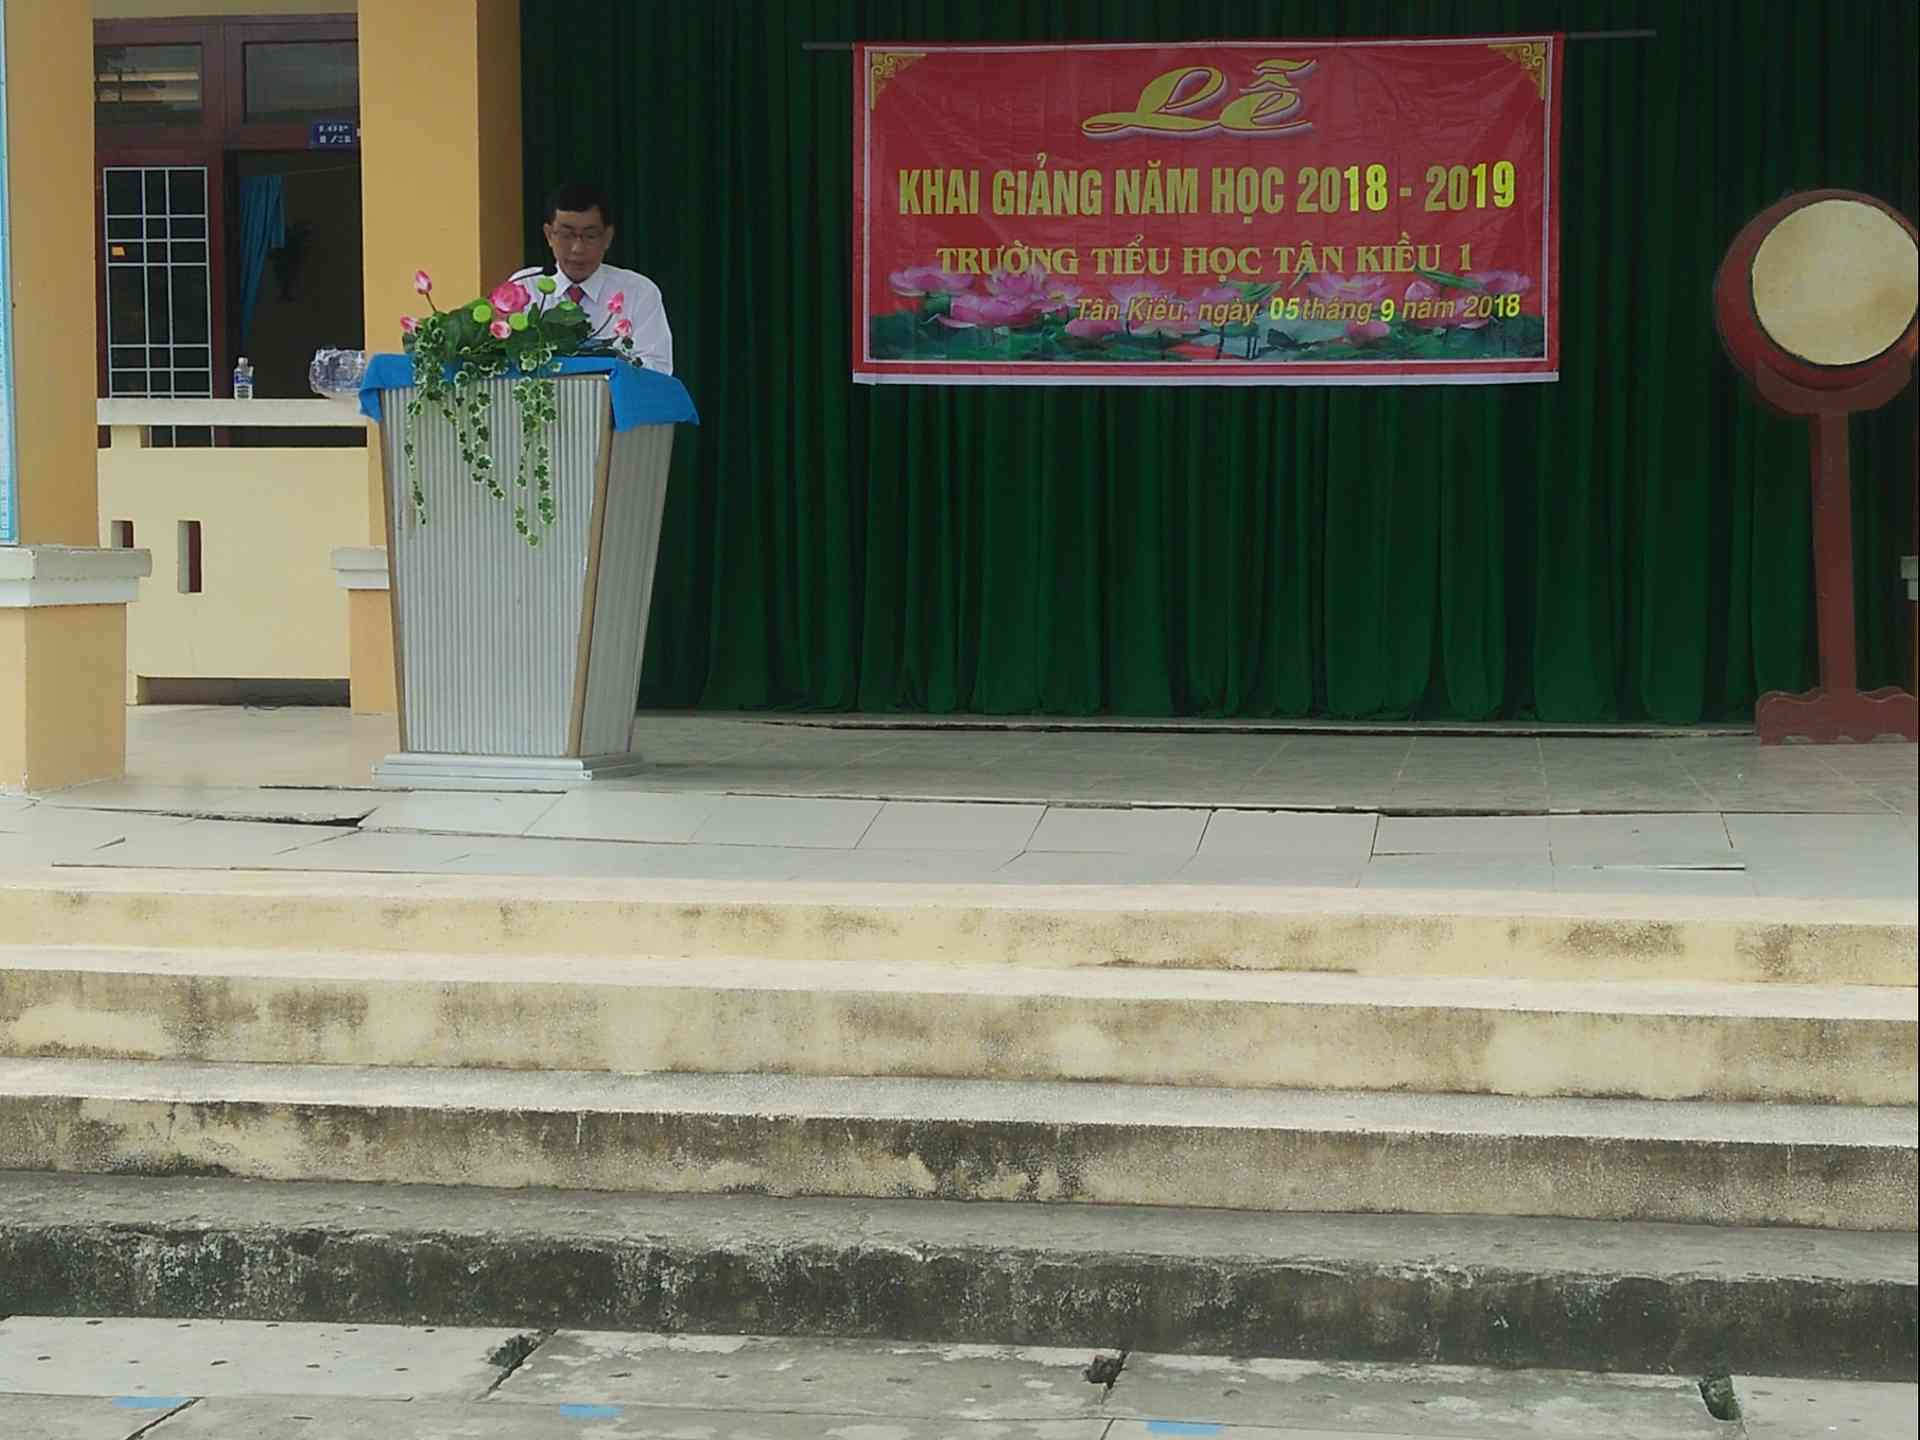 Ông Dương Văn Hà hiệu trưởng phát biểu trong buổi lễ khai giảng